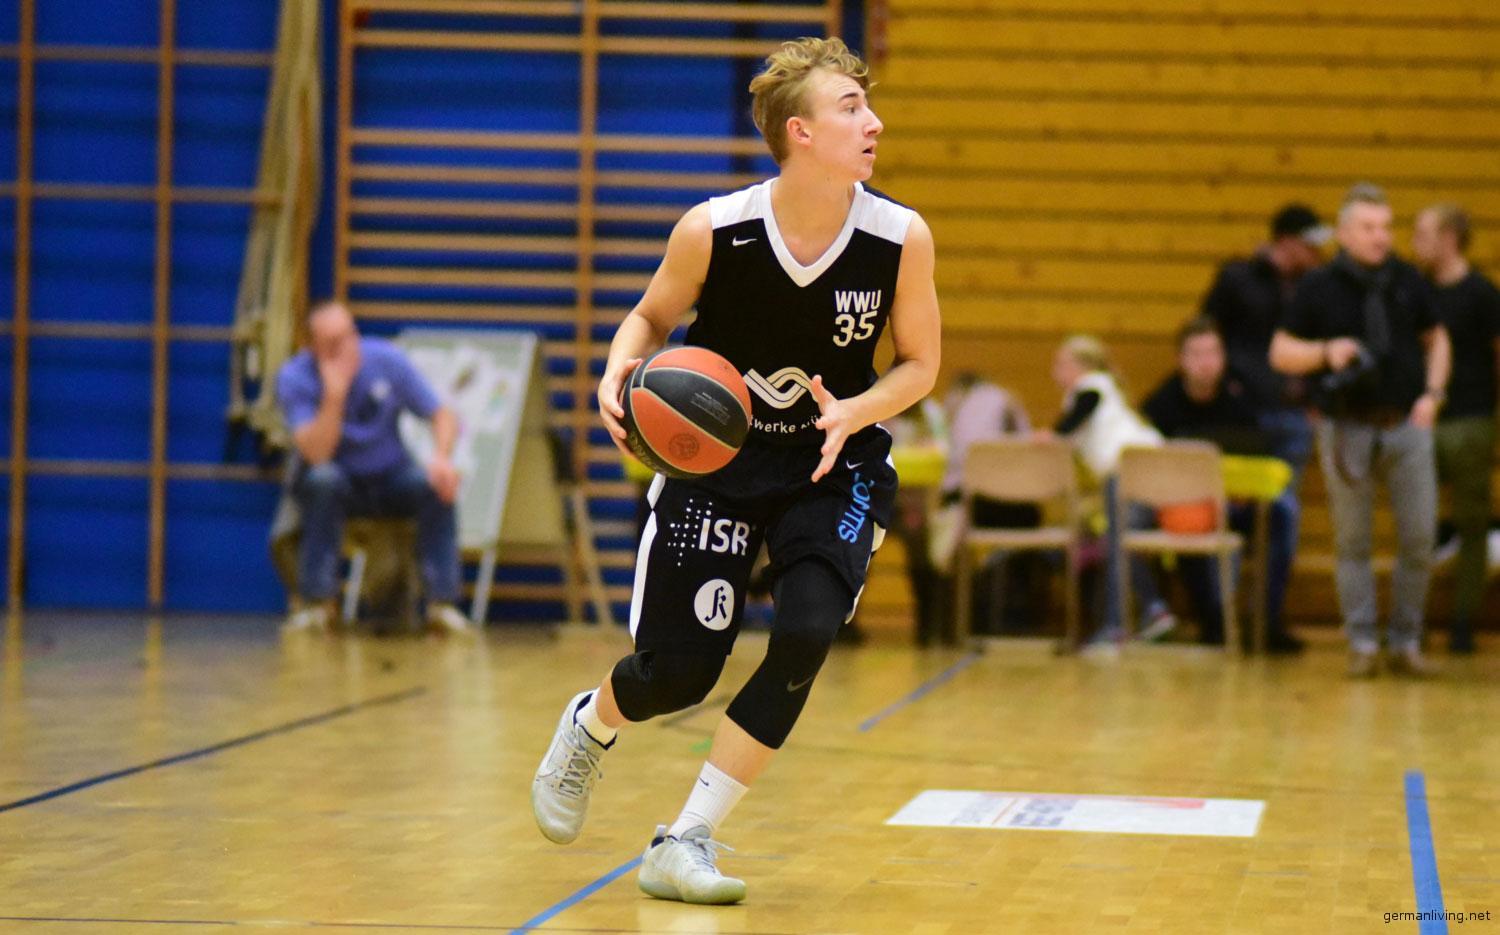 Nicolas Funk - WWU Baskets Münster